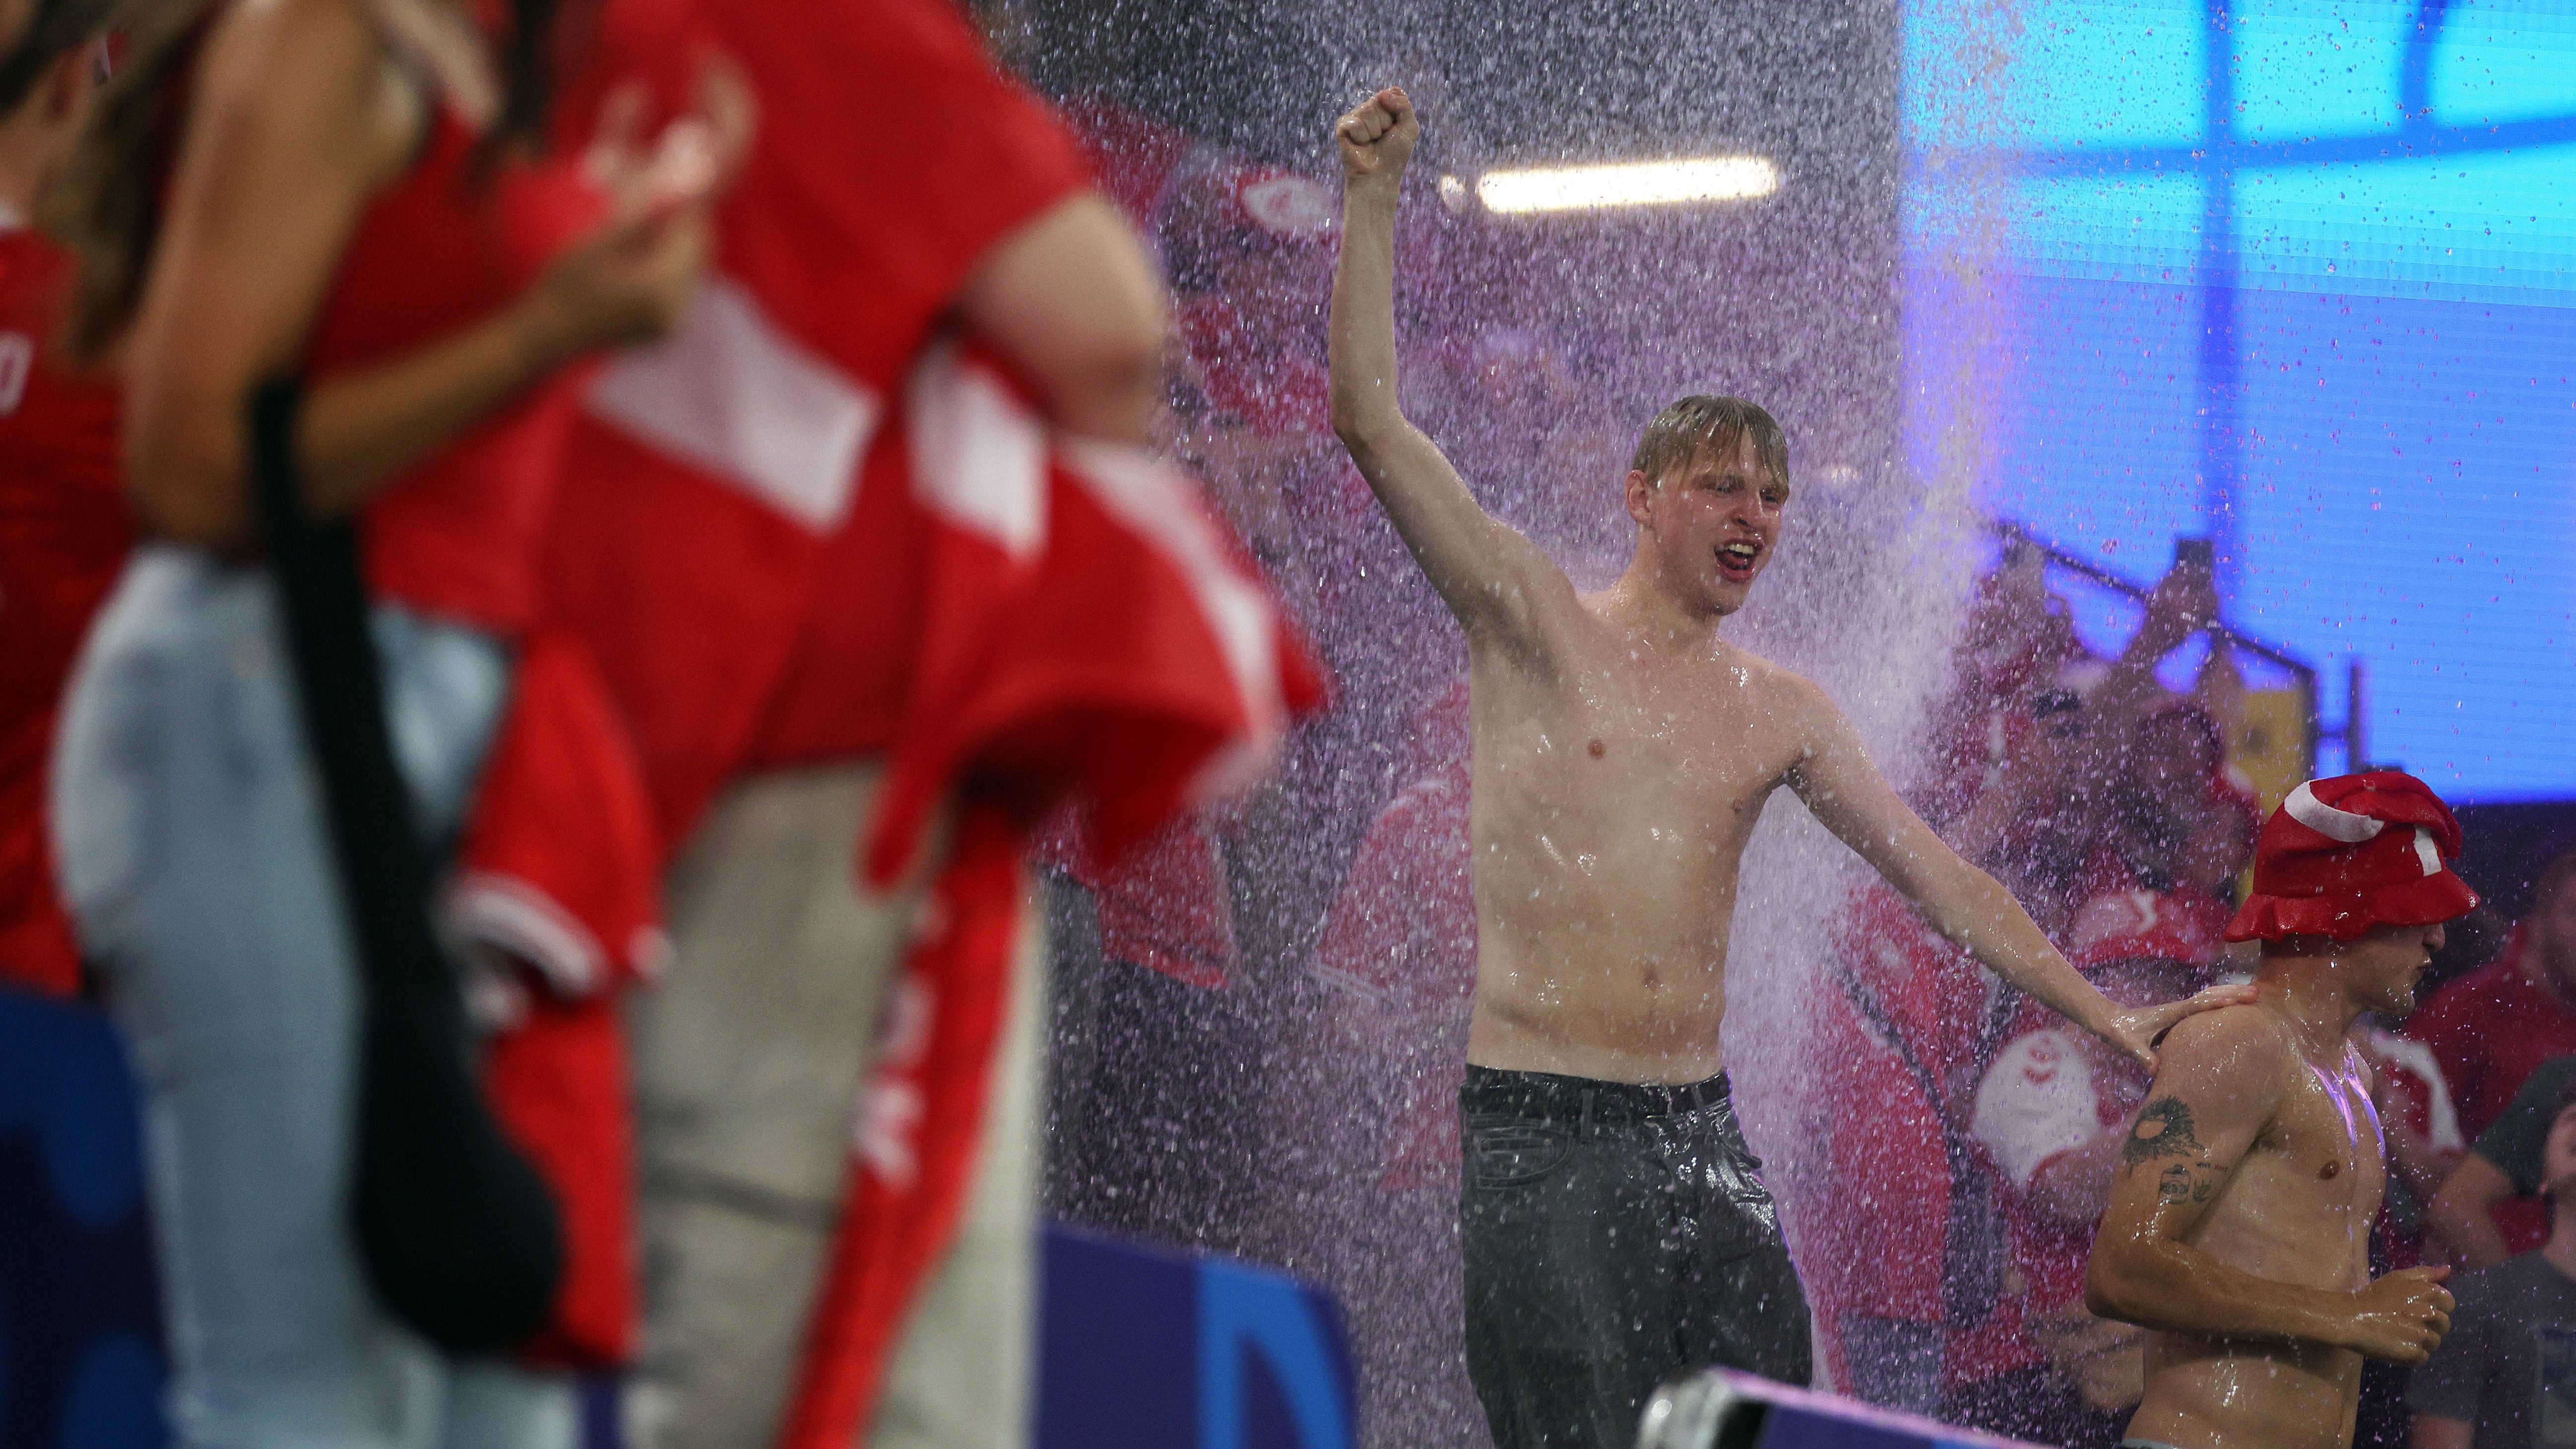 <strong>Dänen feiern Wasser-Party</strong><br>Doch einige Fans nutzten den plötzlichen "Wasserfall" zu einer spätabendlichen Abkühlung.&nbsp;